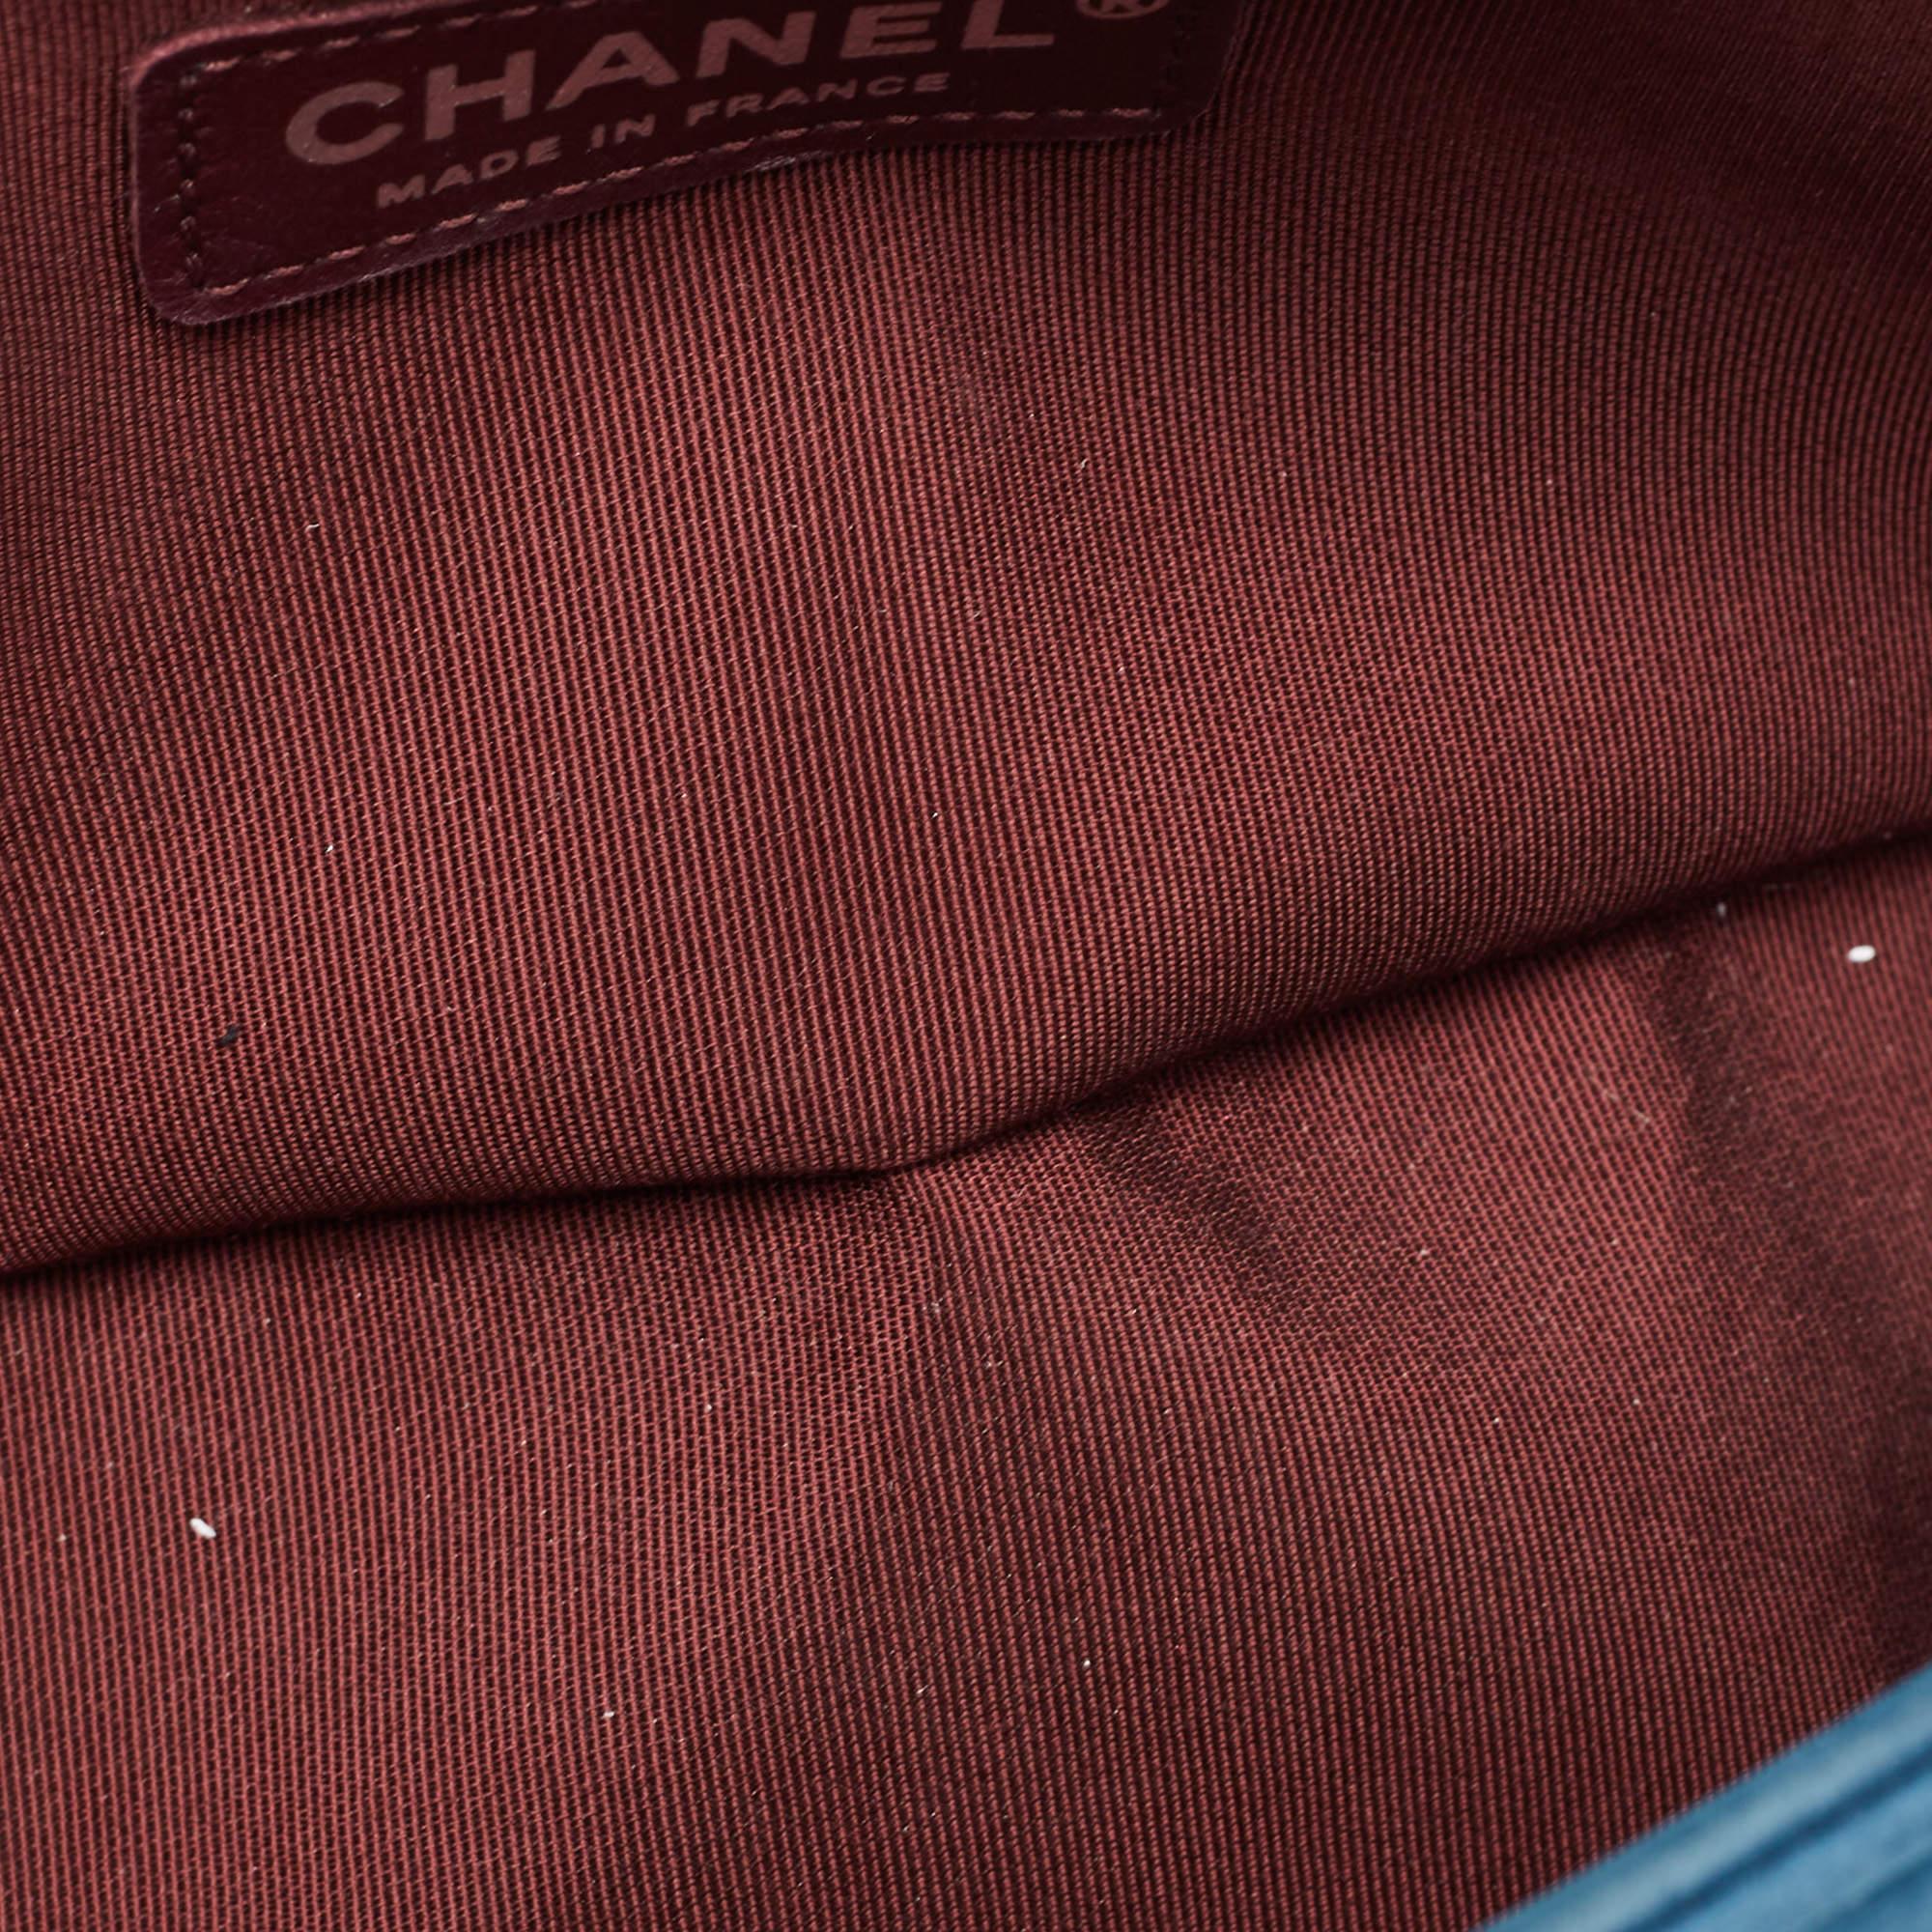 Chanel Teal Blue Chevron Nubuck Leather Medium Boy Flap Bag 10